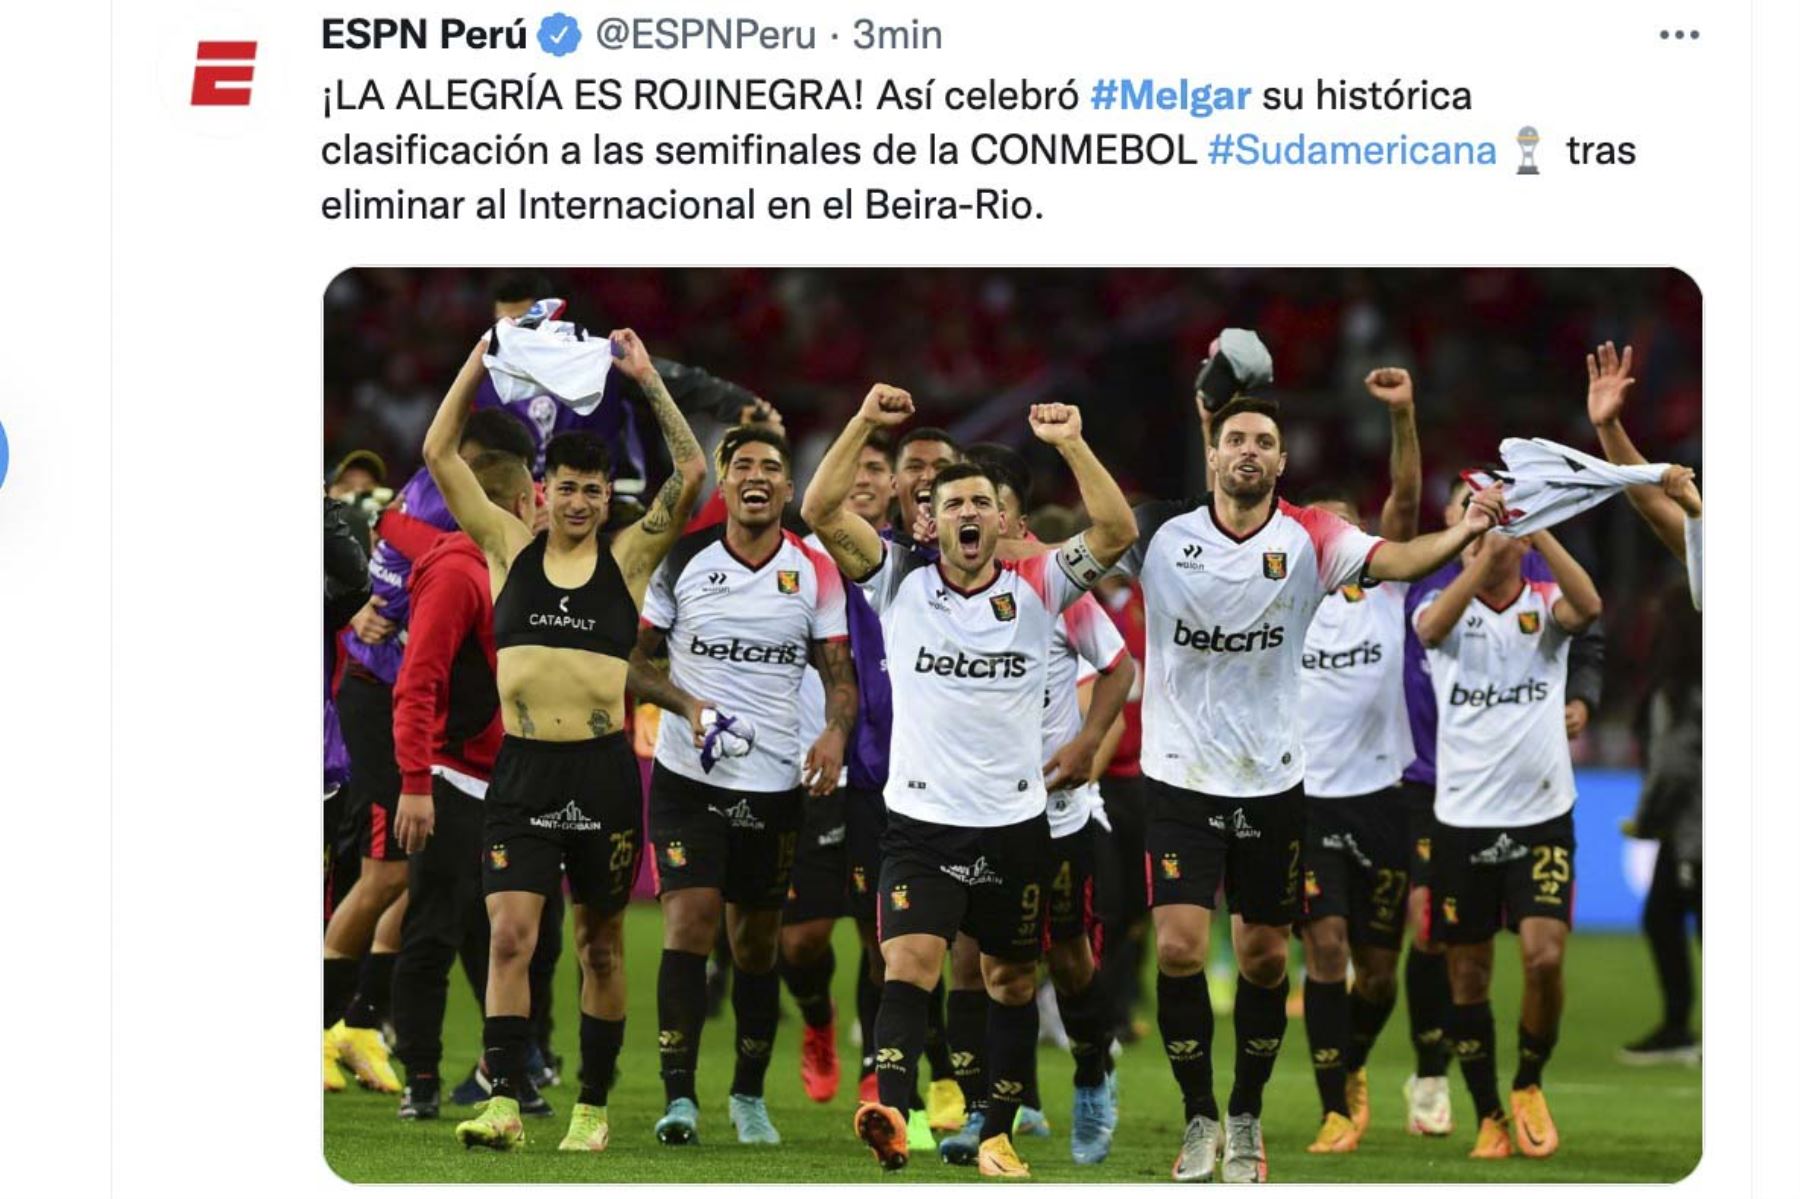 La prensa internacional destacó la clasificación del Melgar de Arequipa a las semifinales de la Copa Sudamericana al eliminar en la tanda de penales al Internacional de Brasil. Foto: Difusión